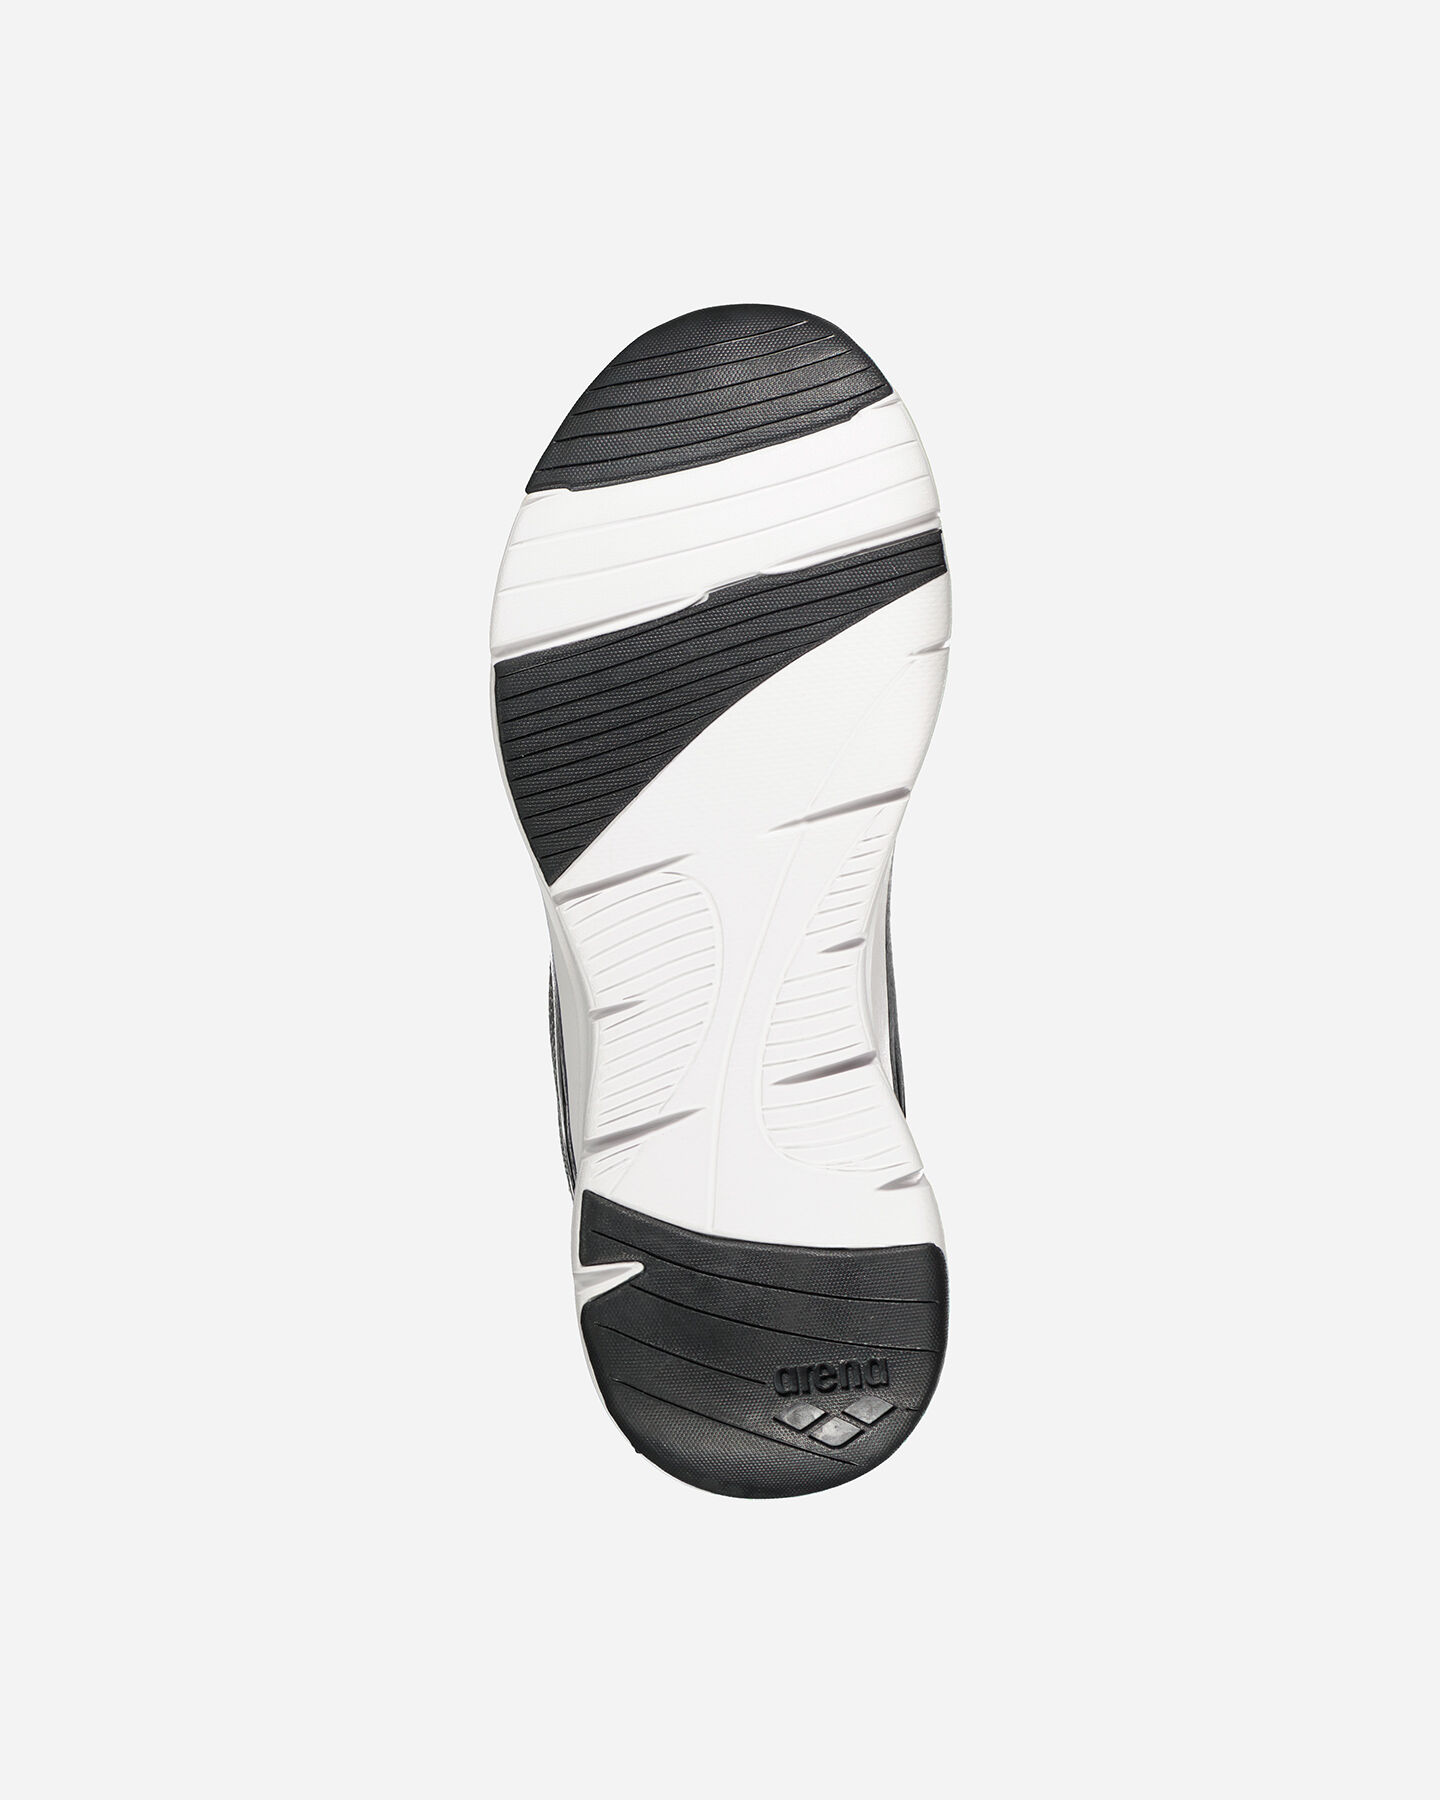  Scarpe sneakers ARENA FASTRACK EVO M S4131617|04|39 scatto 2